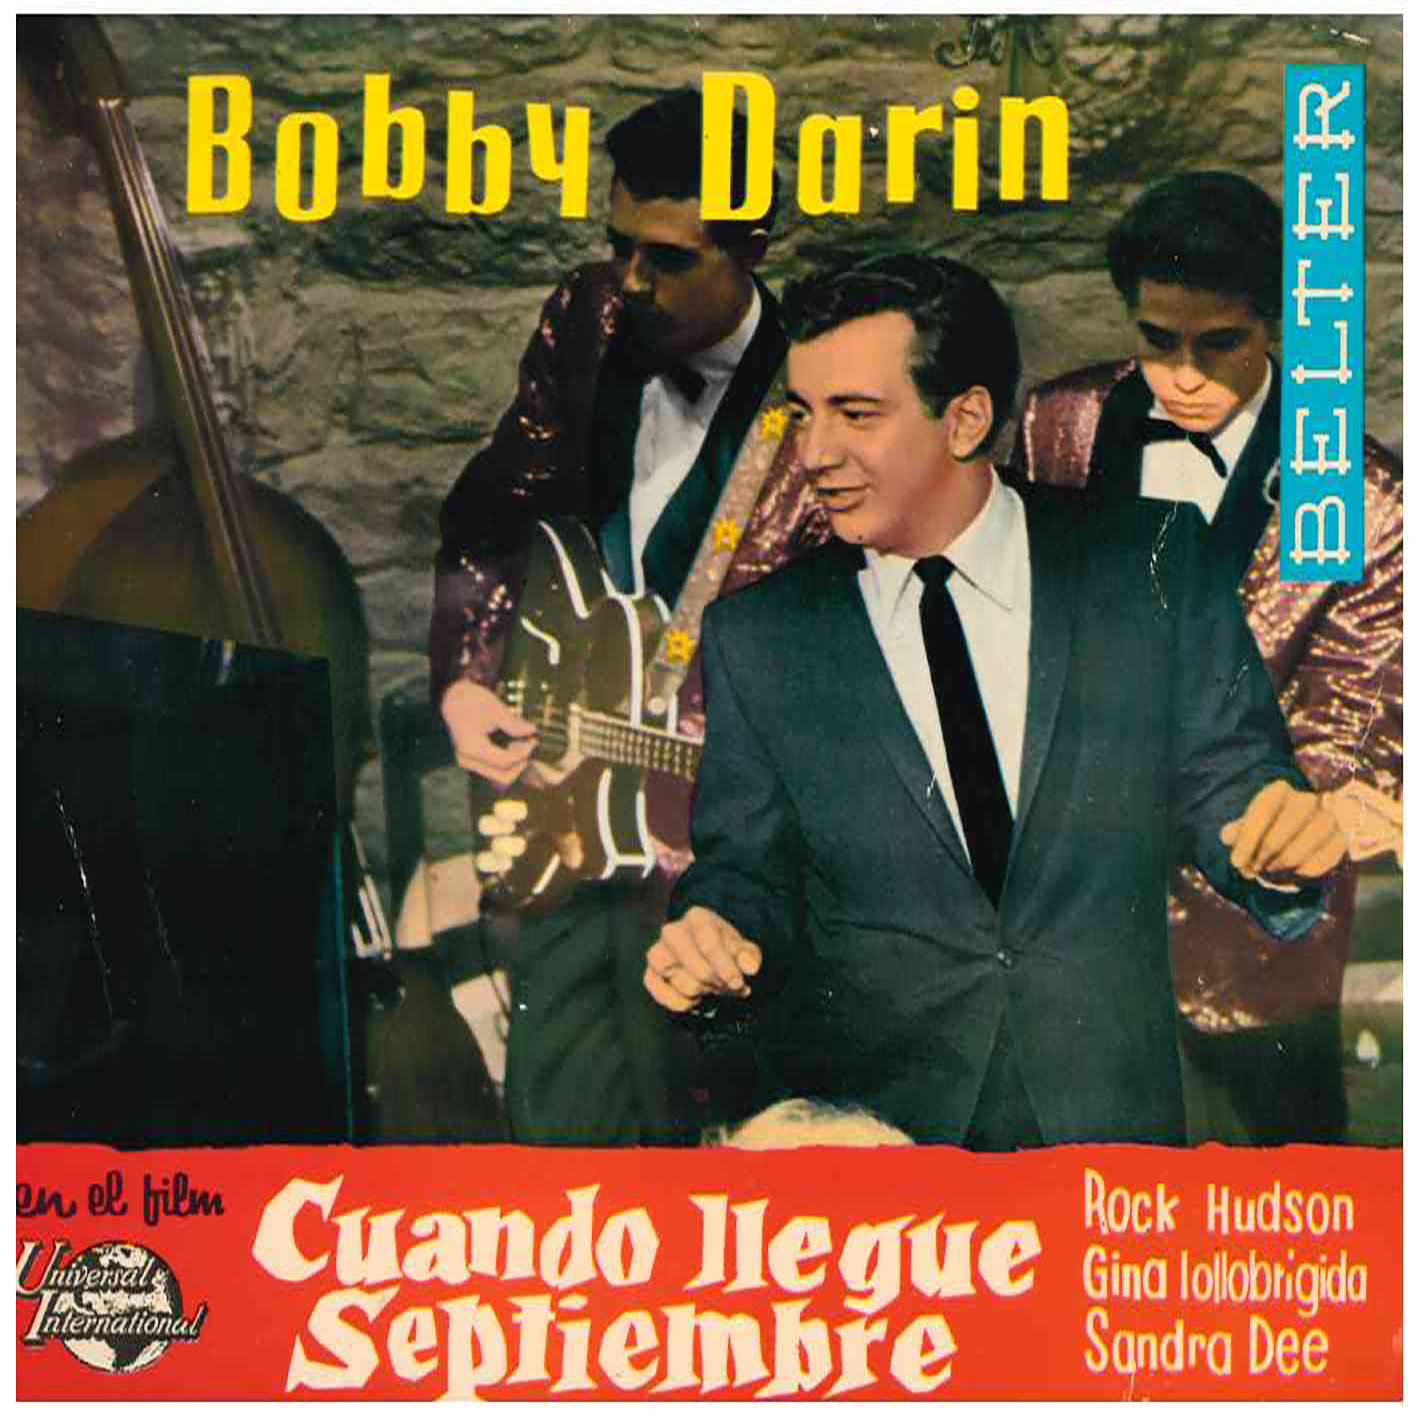 Bobby Darin – En El Film, Cuando Llegue Septiembre